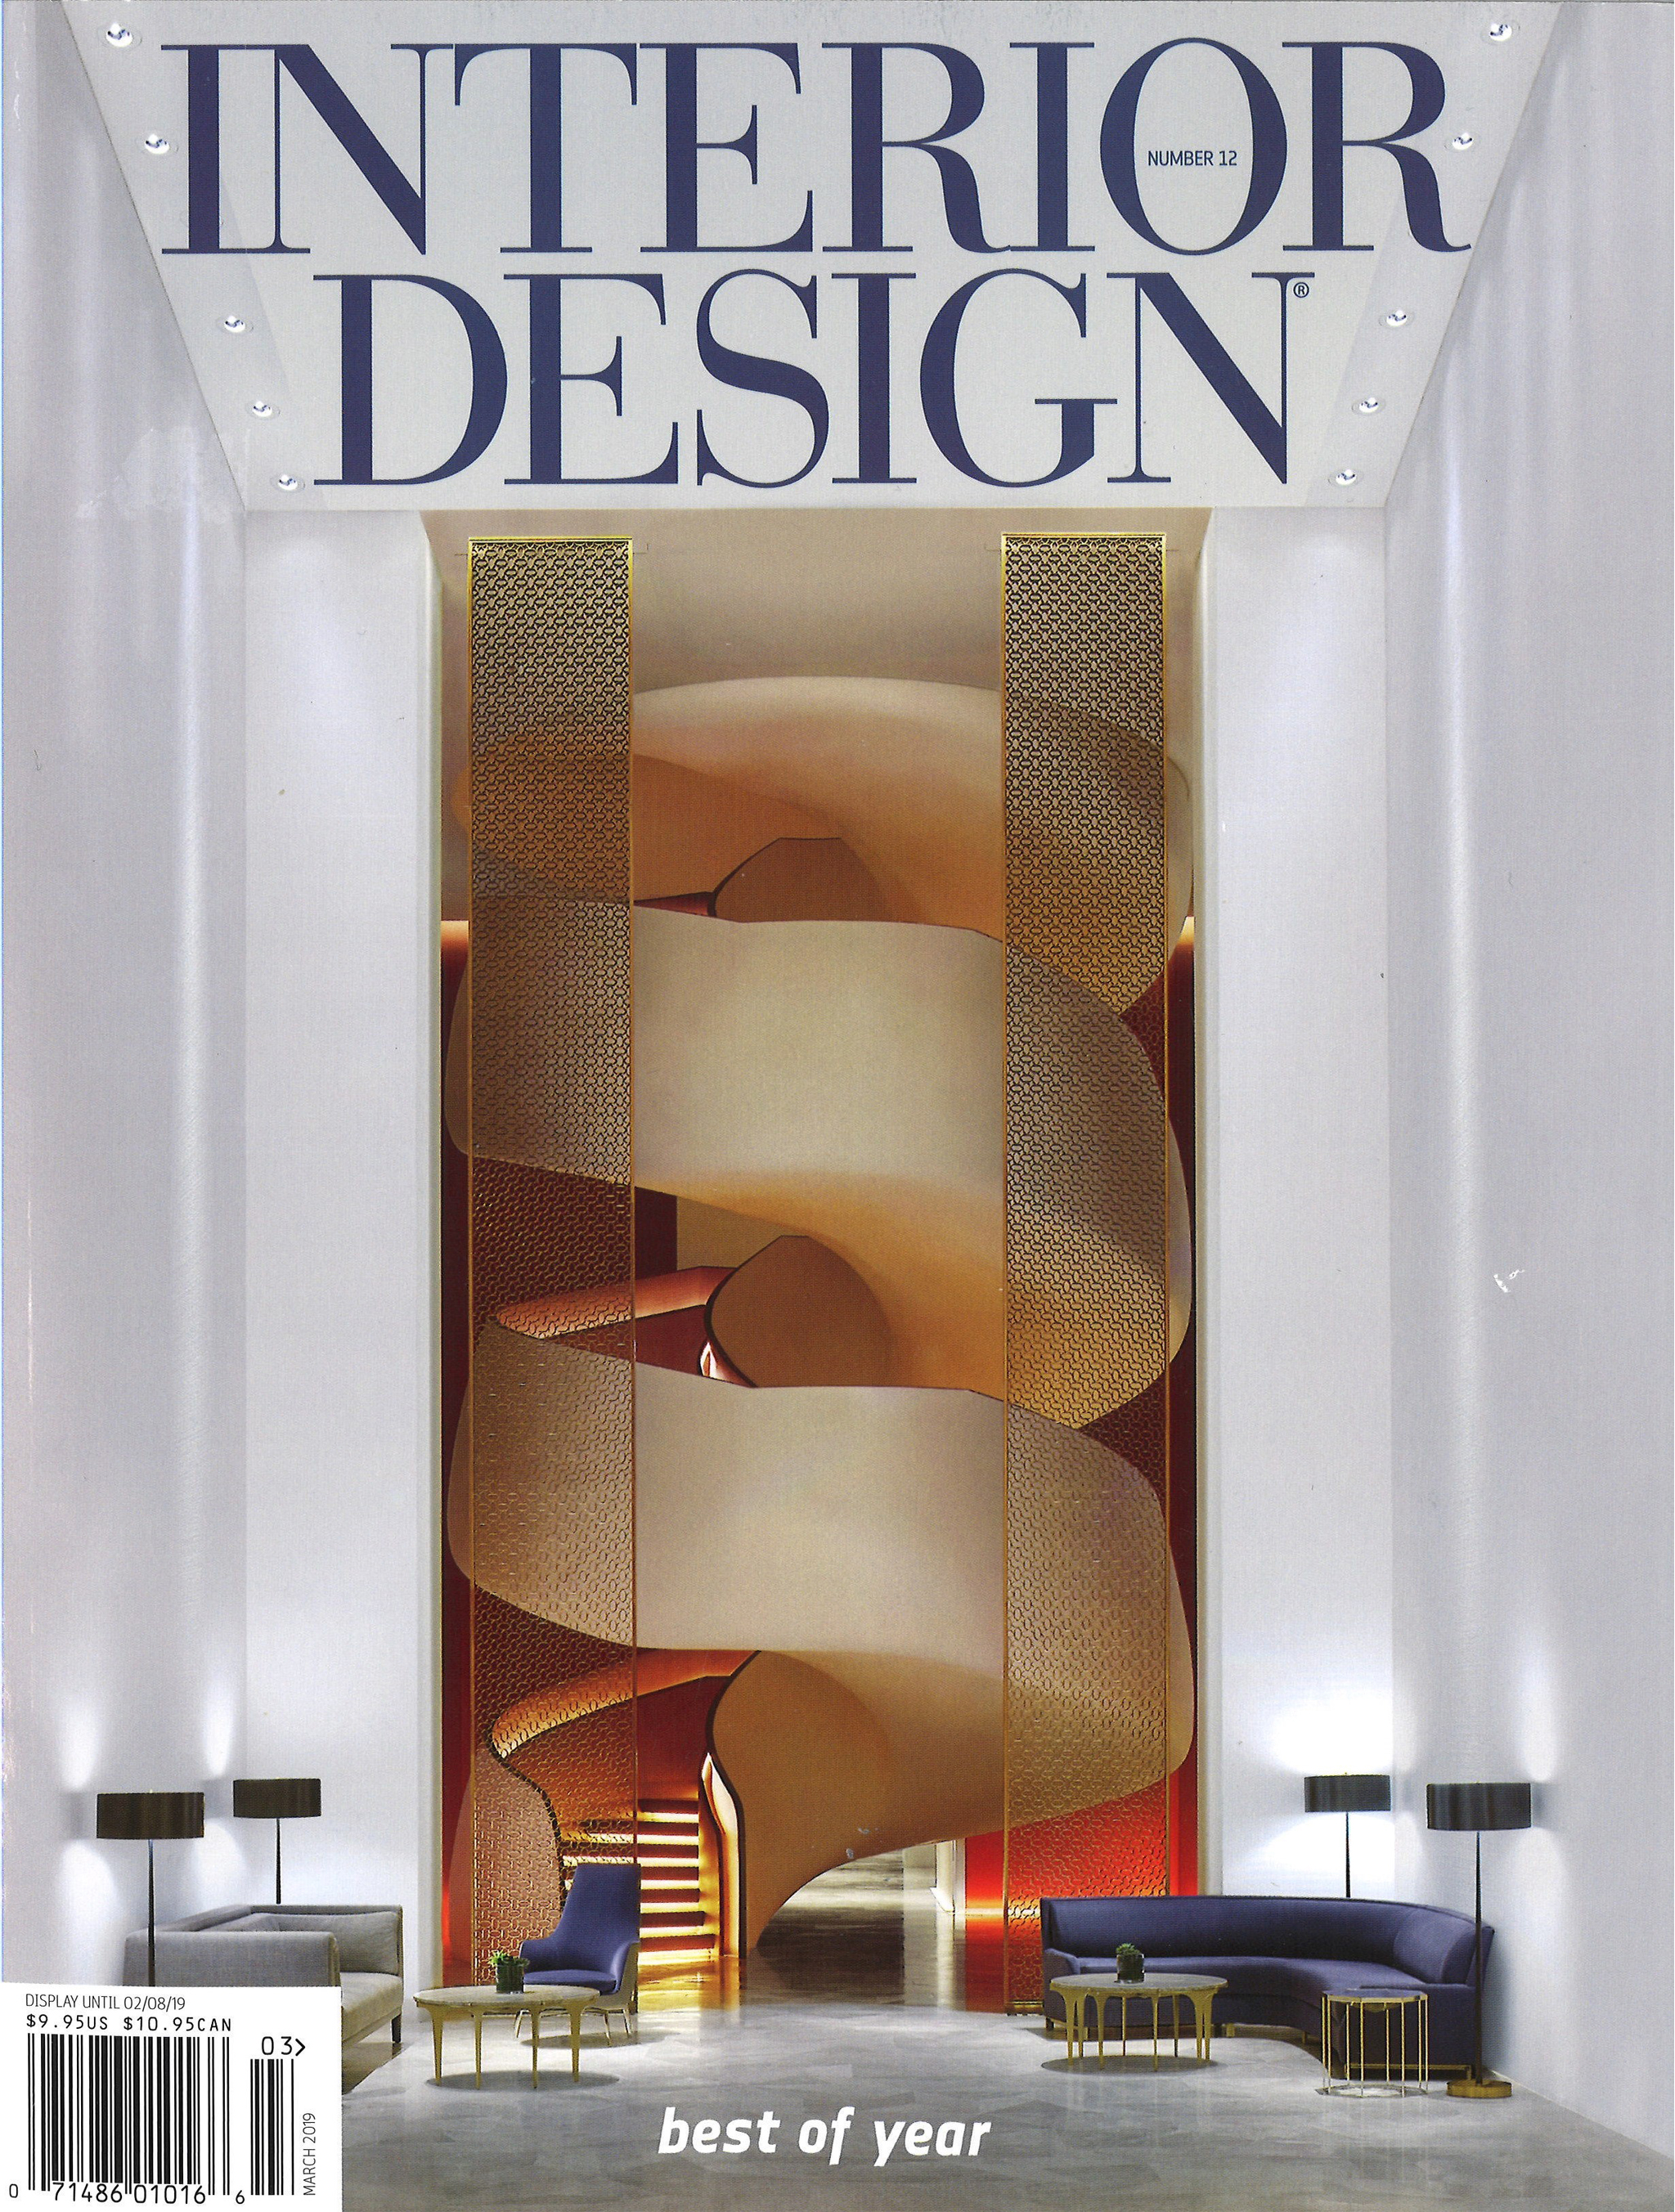 Interior Design Magazine Best of Year Award